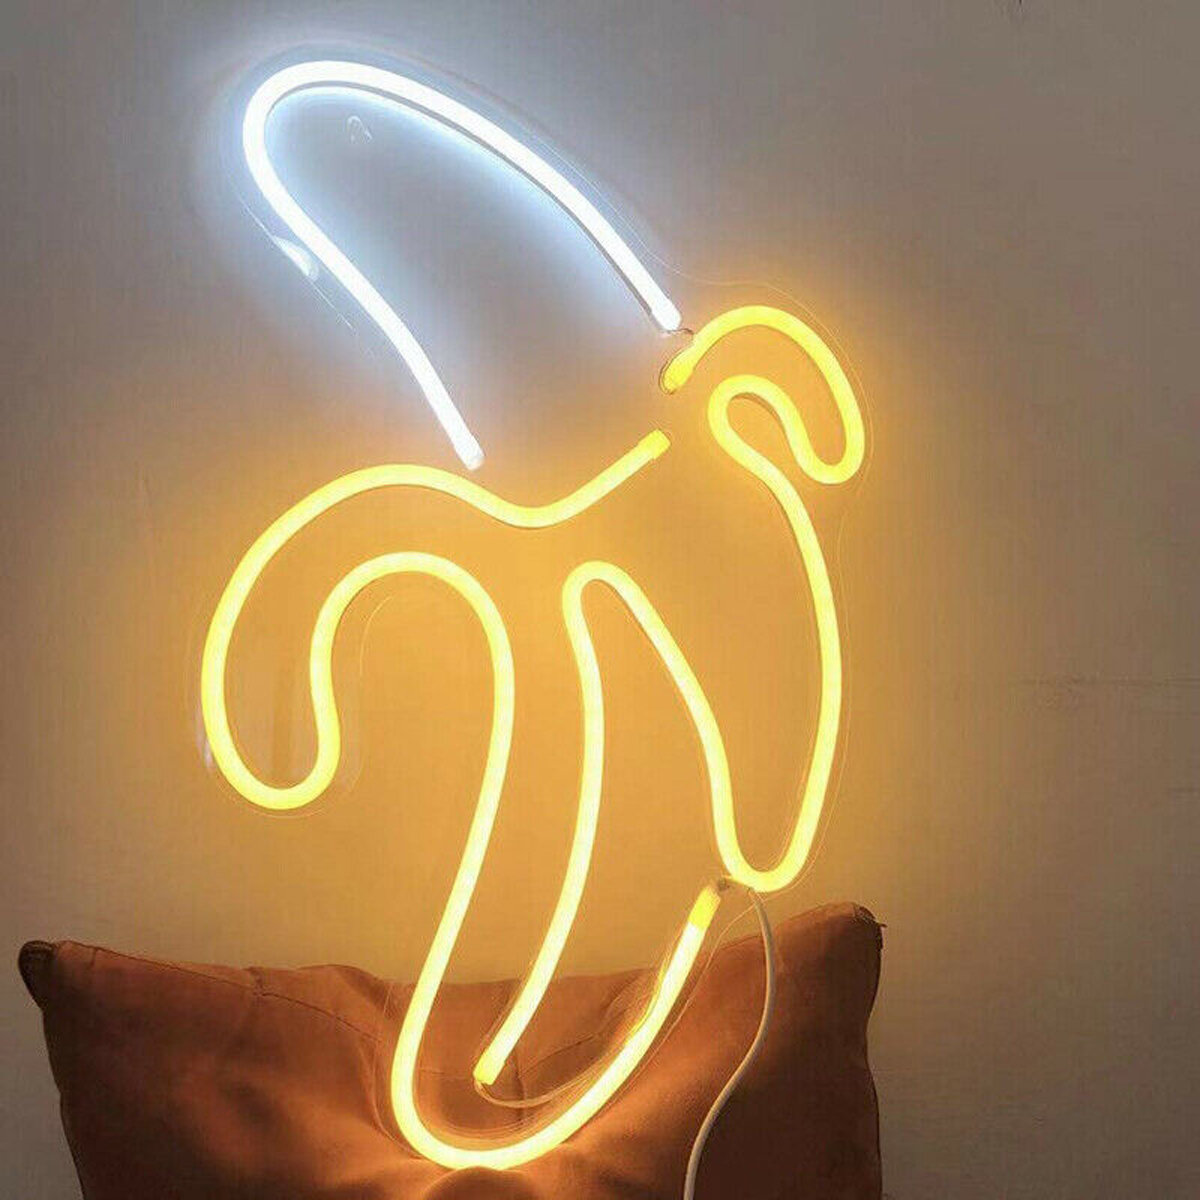 Banane LED néon signe lumière Art applique murale pour Bar Pub chambre décoration